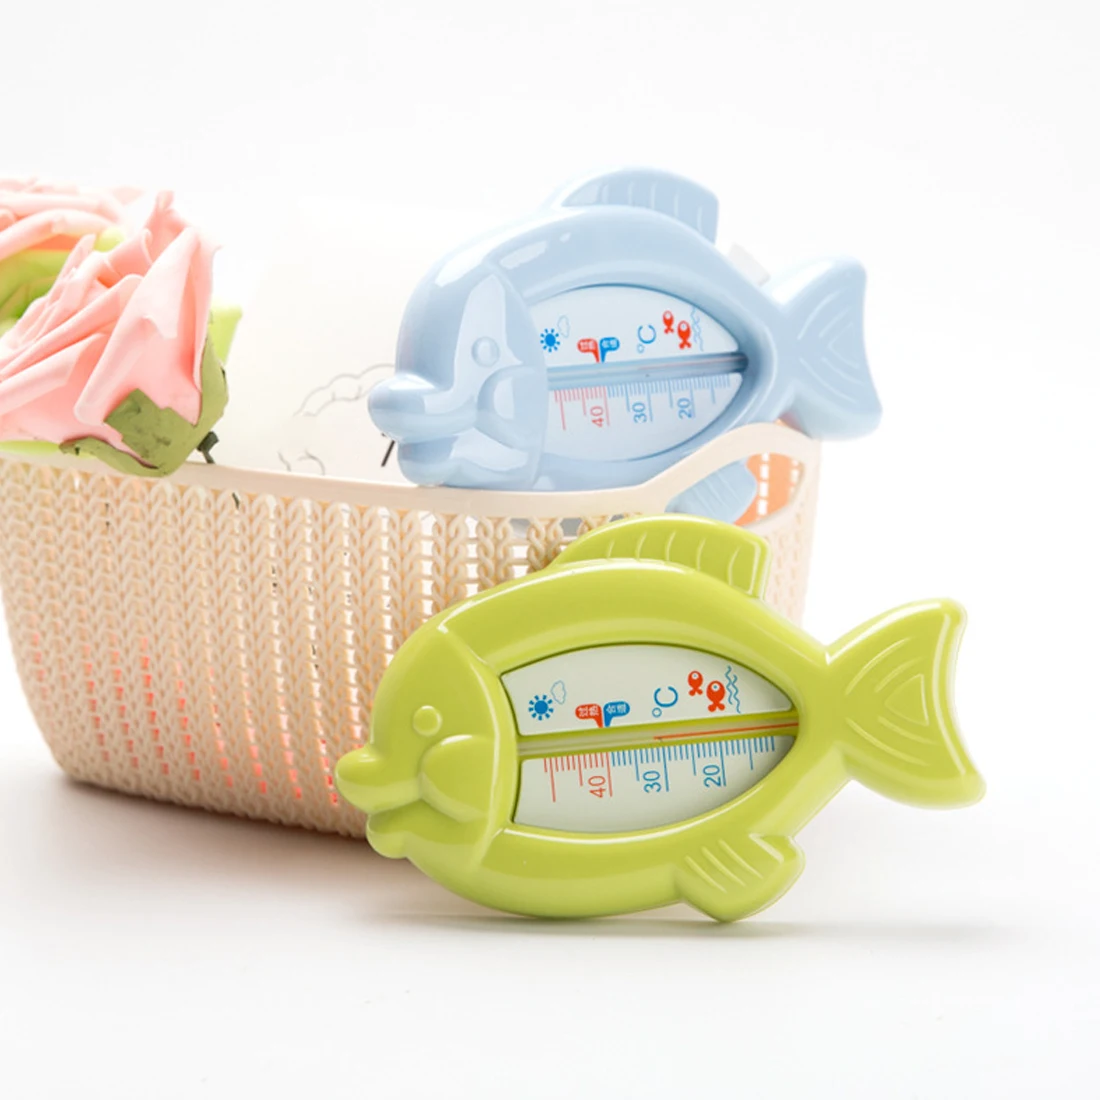 Плавающая Рыба форма Ванна для младенцев Термометры ванна воды сенсор Термометры игрушка для ребенка для ванной применение уход за